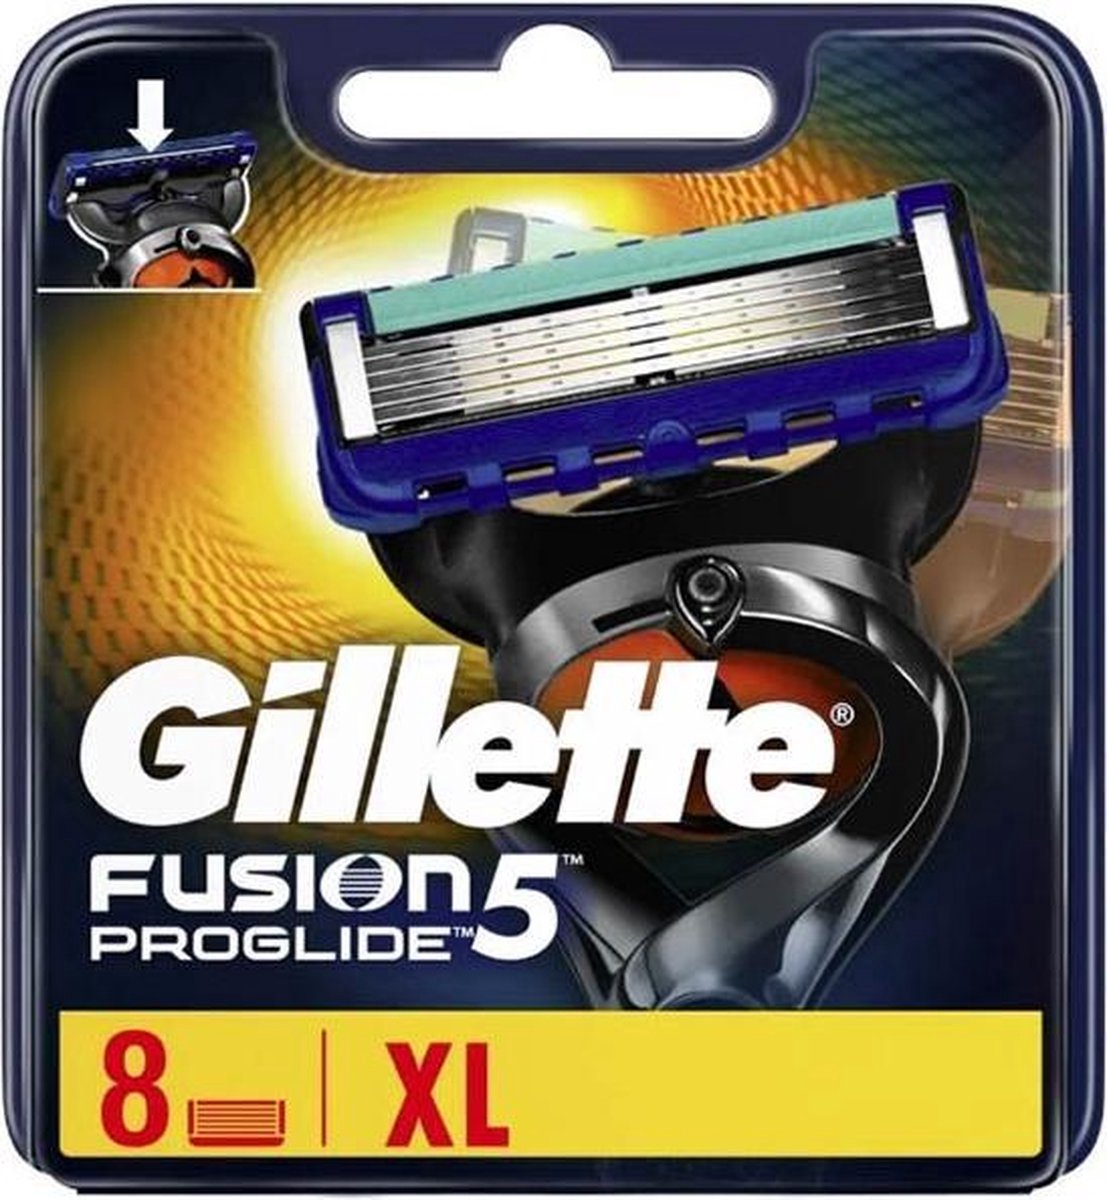 Gillette Fusion5 ProGlide -Scheermesjes - 8 Stuks - Gillette